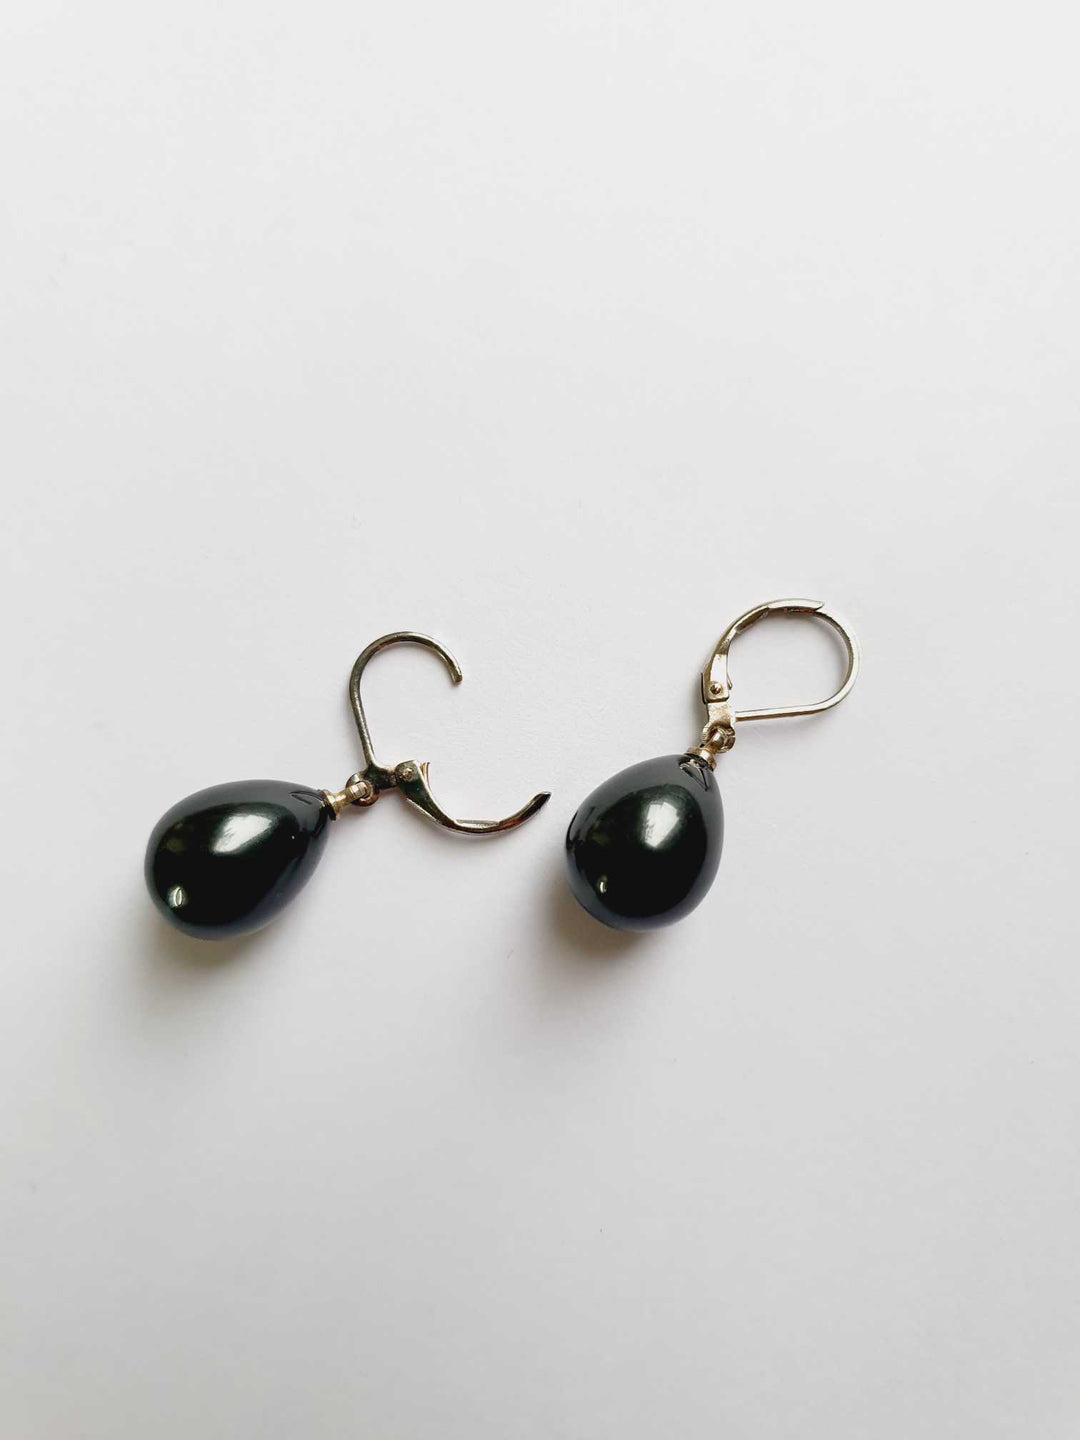 Vintage Silver Toned Black Pearl Drop Earrings